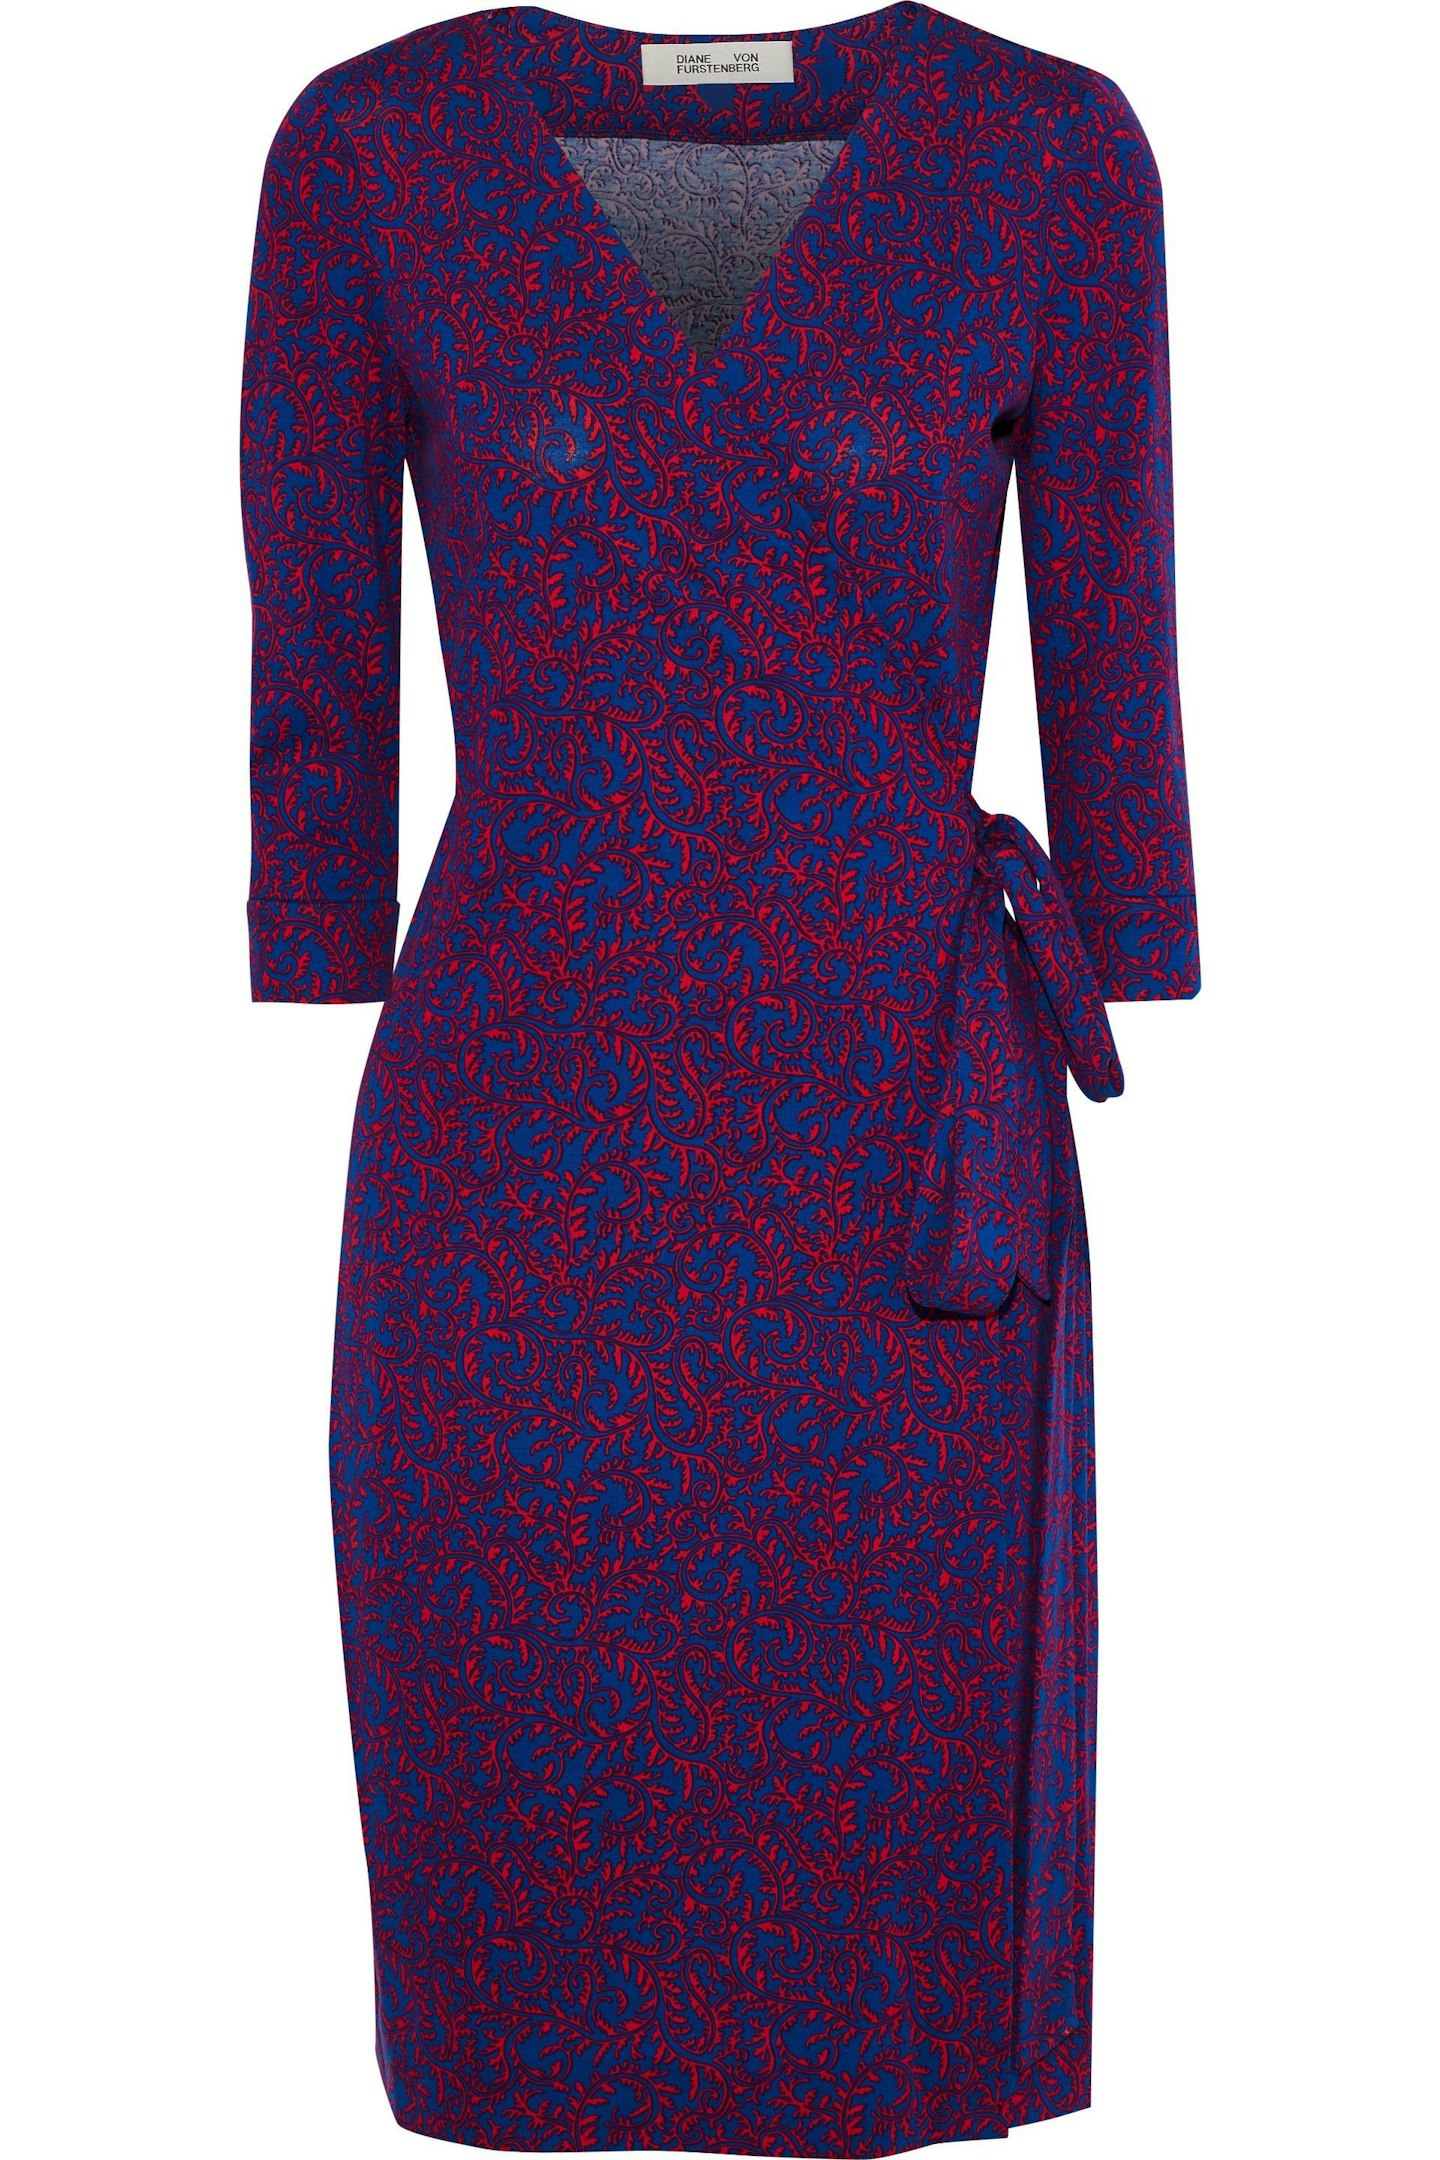 Diane Von Furstenberg, Printed Wrap Dress, £225